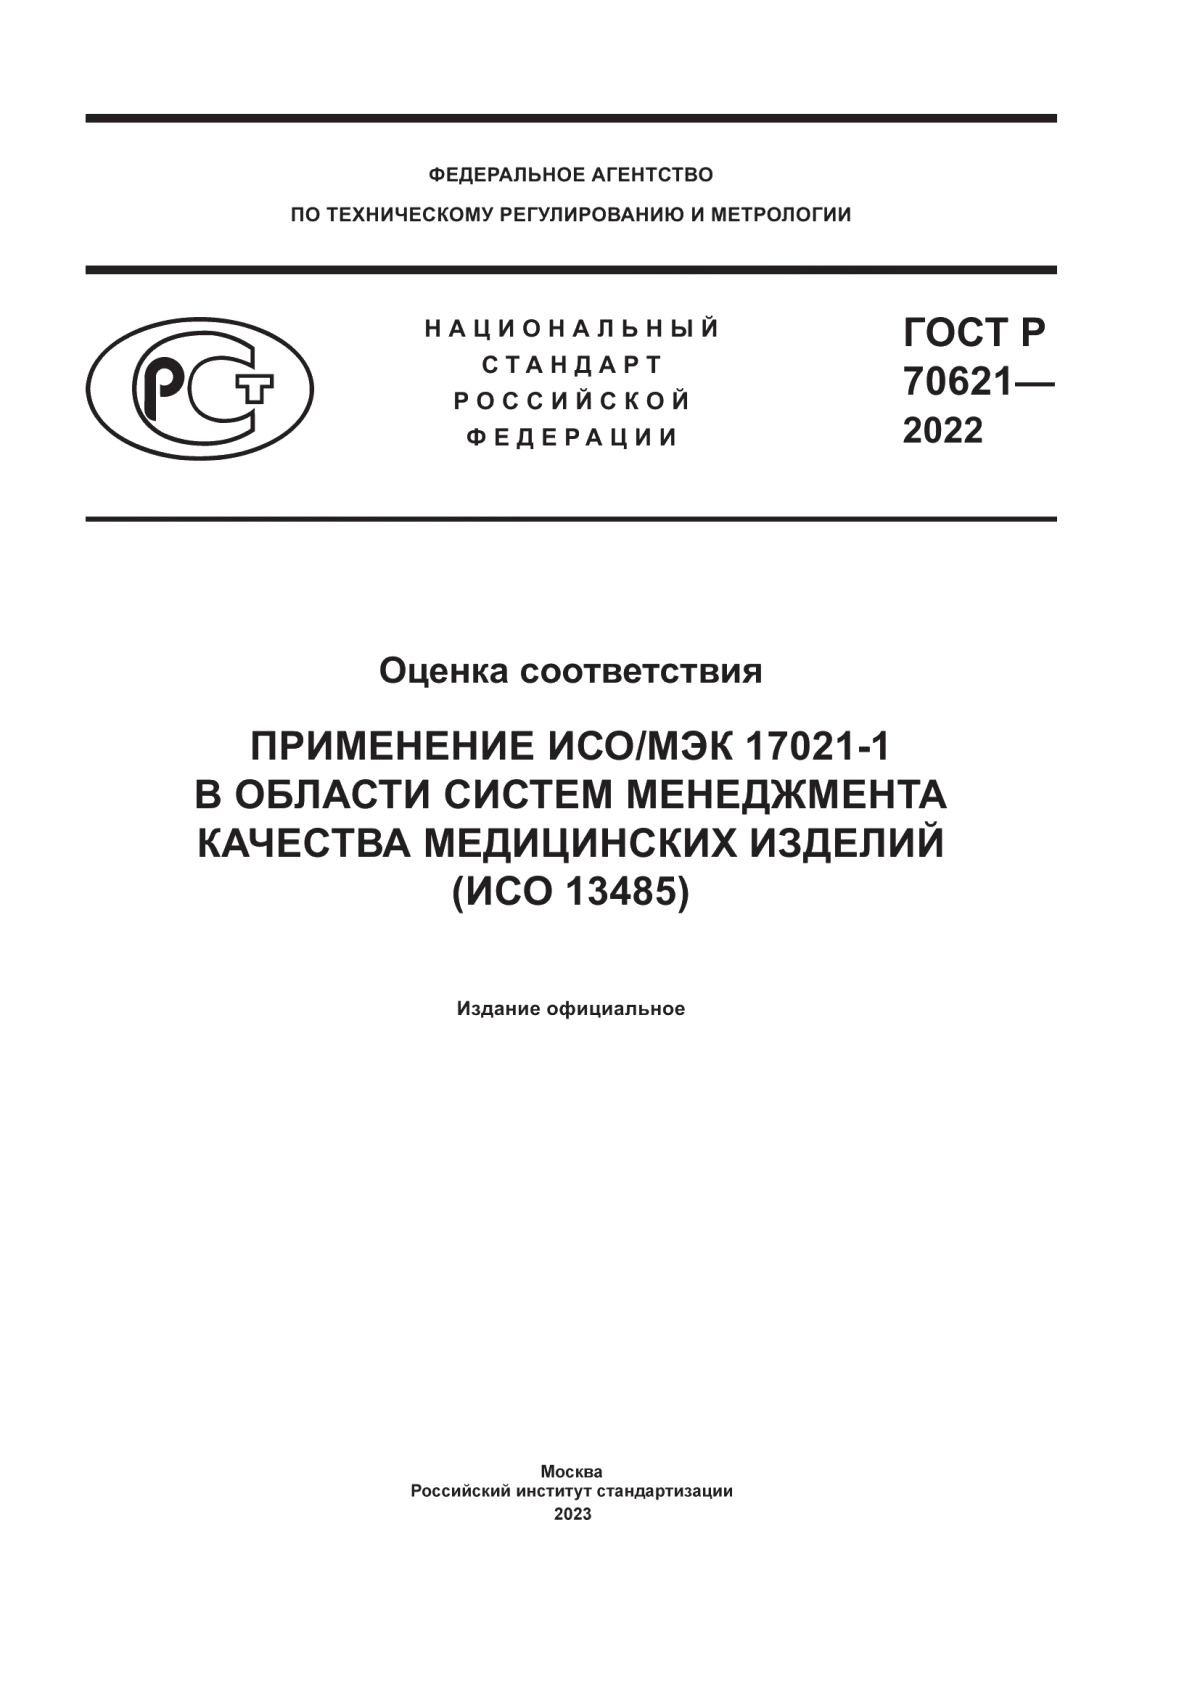 ГОСТ Р 70621-2022 Оценка соответствия. Применение ИСО/МЭК 17021-1 в области систем менеджмента качества медицинских изделий (ИСО 13485)